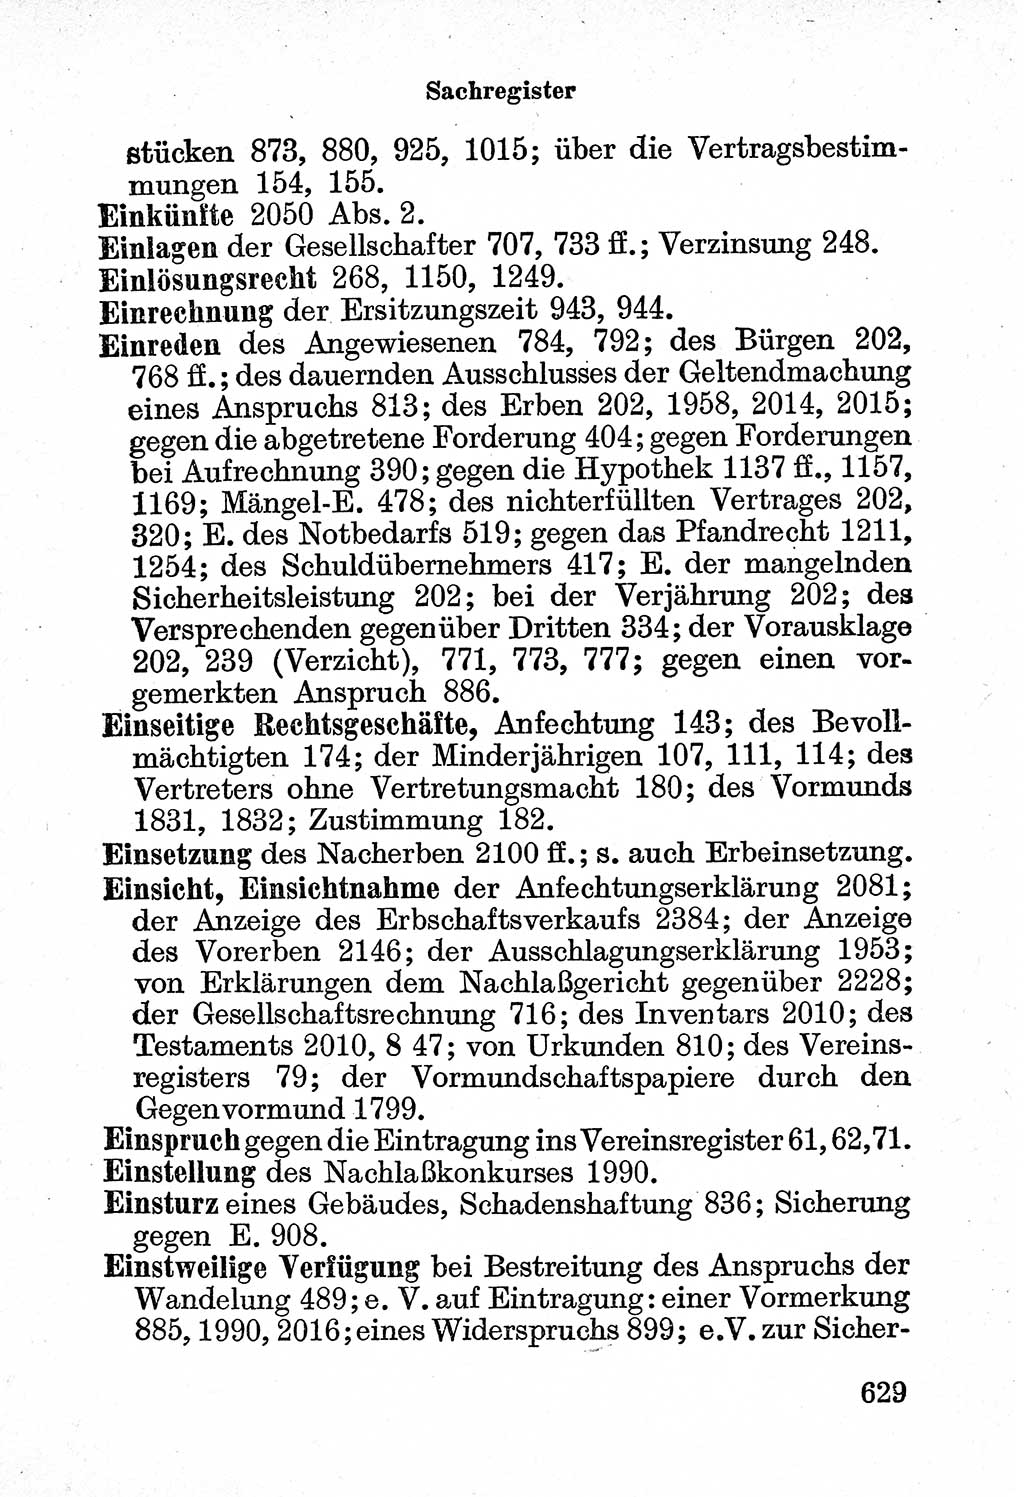 Bürgerliches Gesetzbuch (BGB) nebst wichtigen Nebengesetzen [Deutsche Demokratische Republik (DDR)] 1956, Seite 629 (BGB Nebenges. DDR 1956, S. 629)